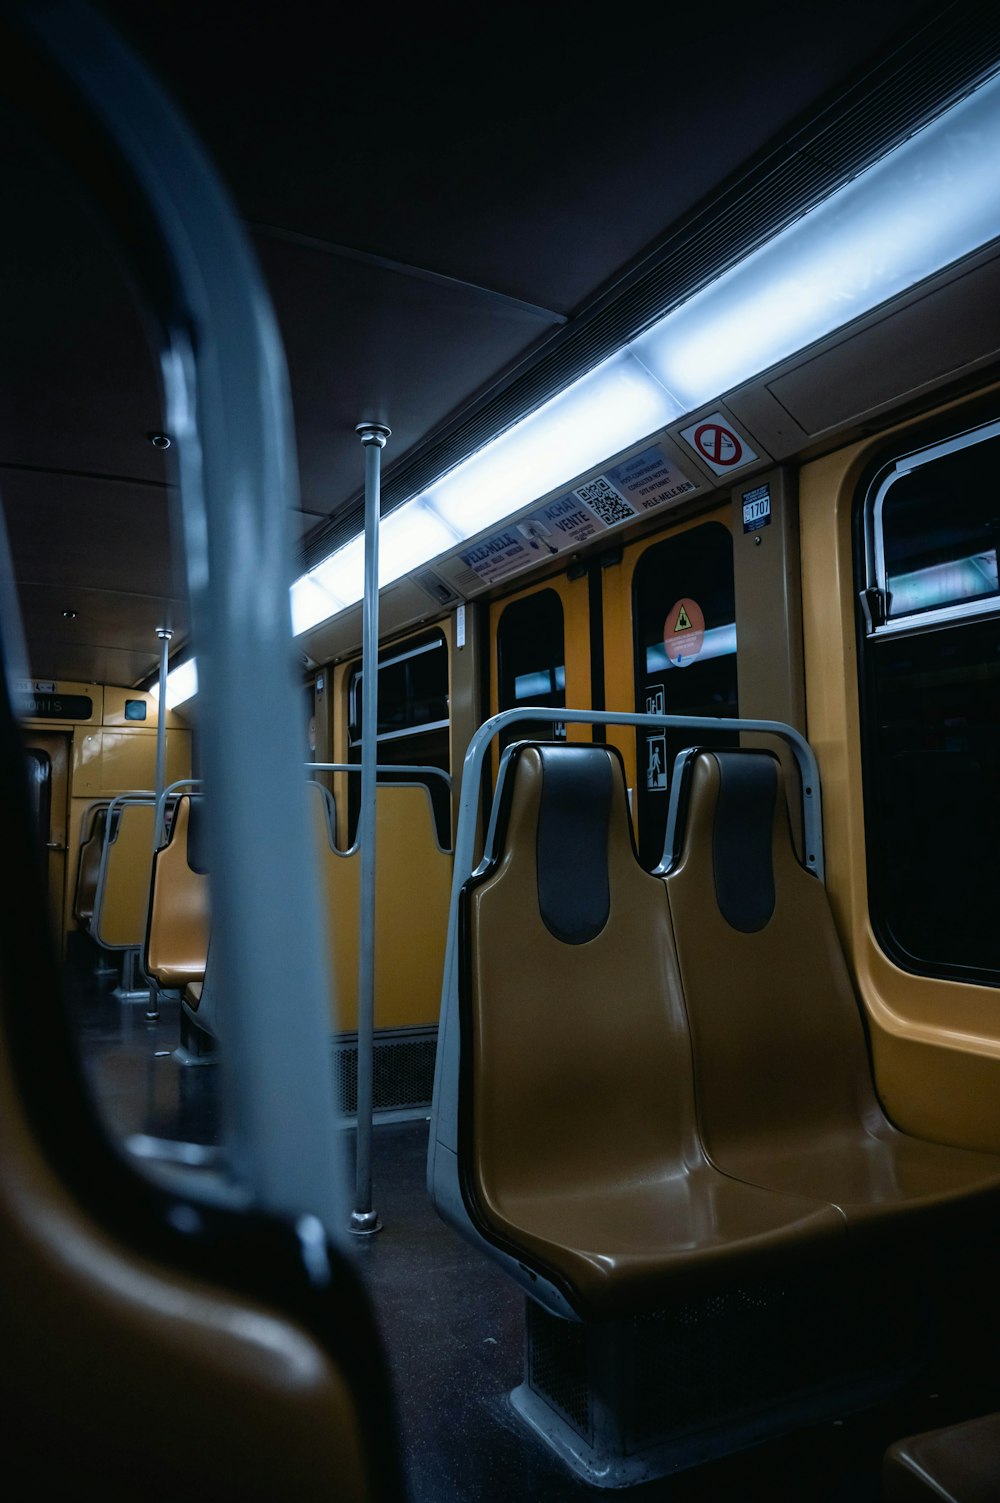 black and yellow train door